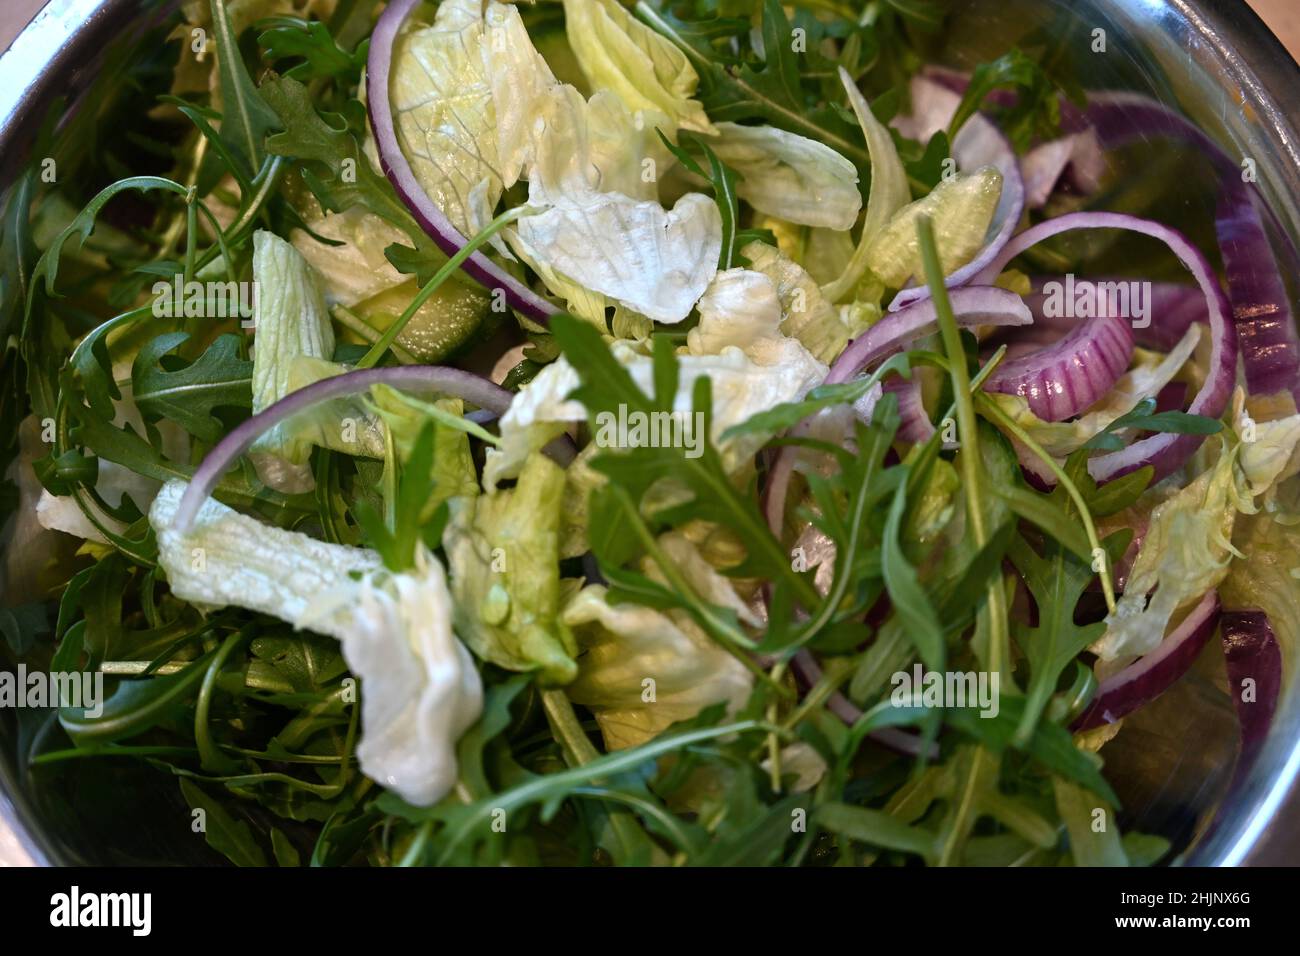 Mix Salad vegan and vegetarian dish Stock Photo